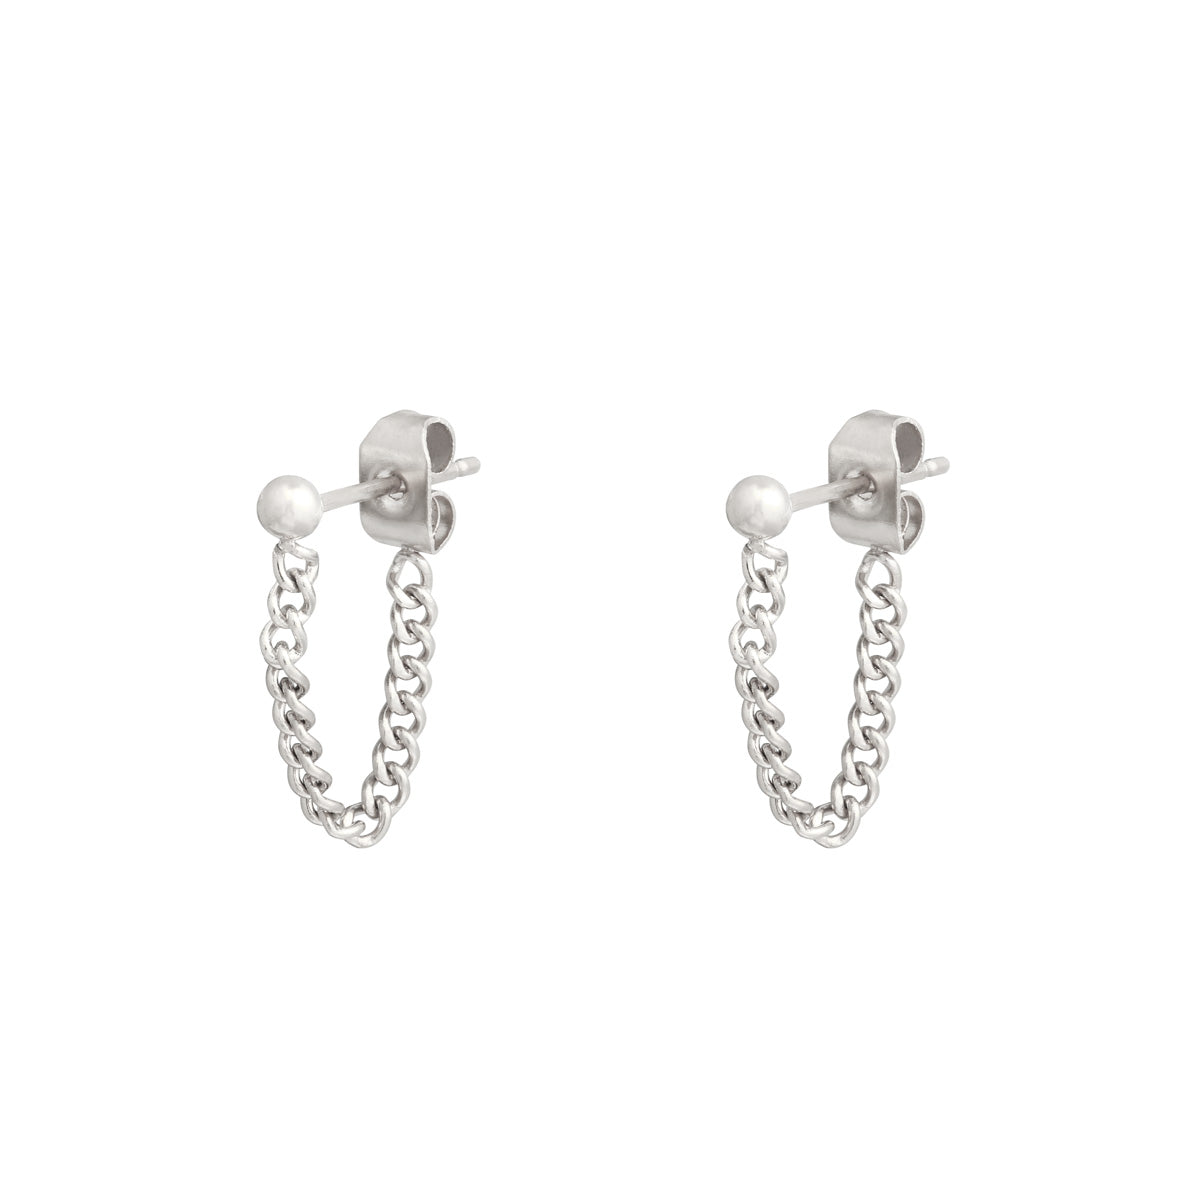 Chain Earrings Silver